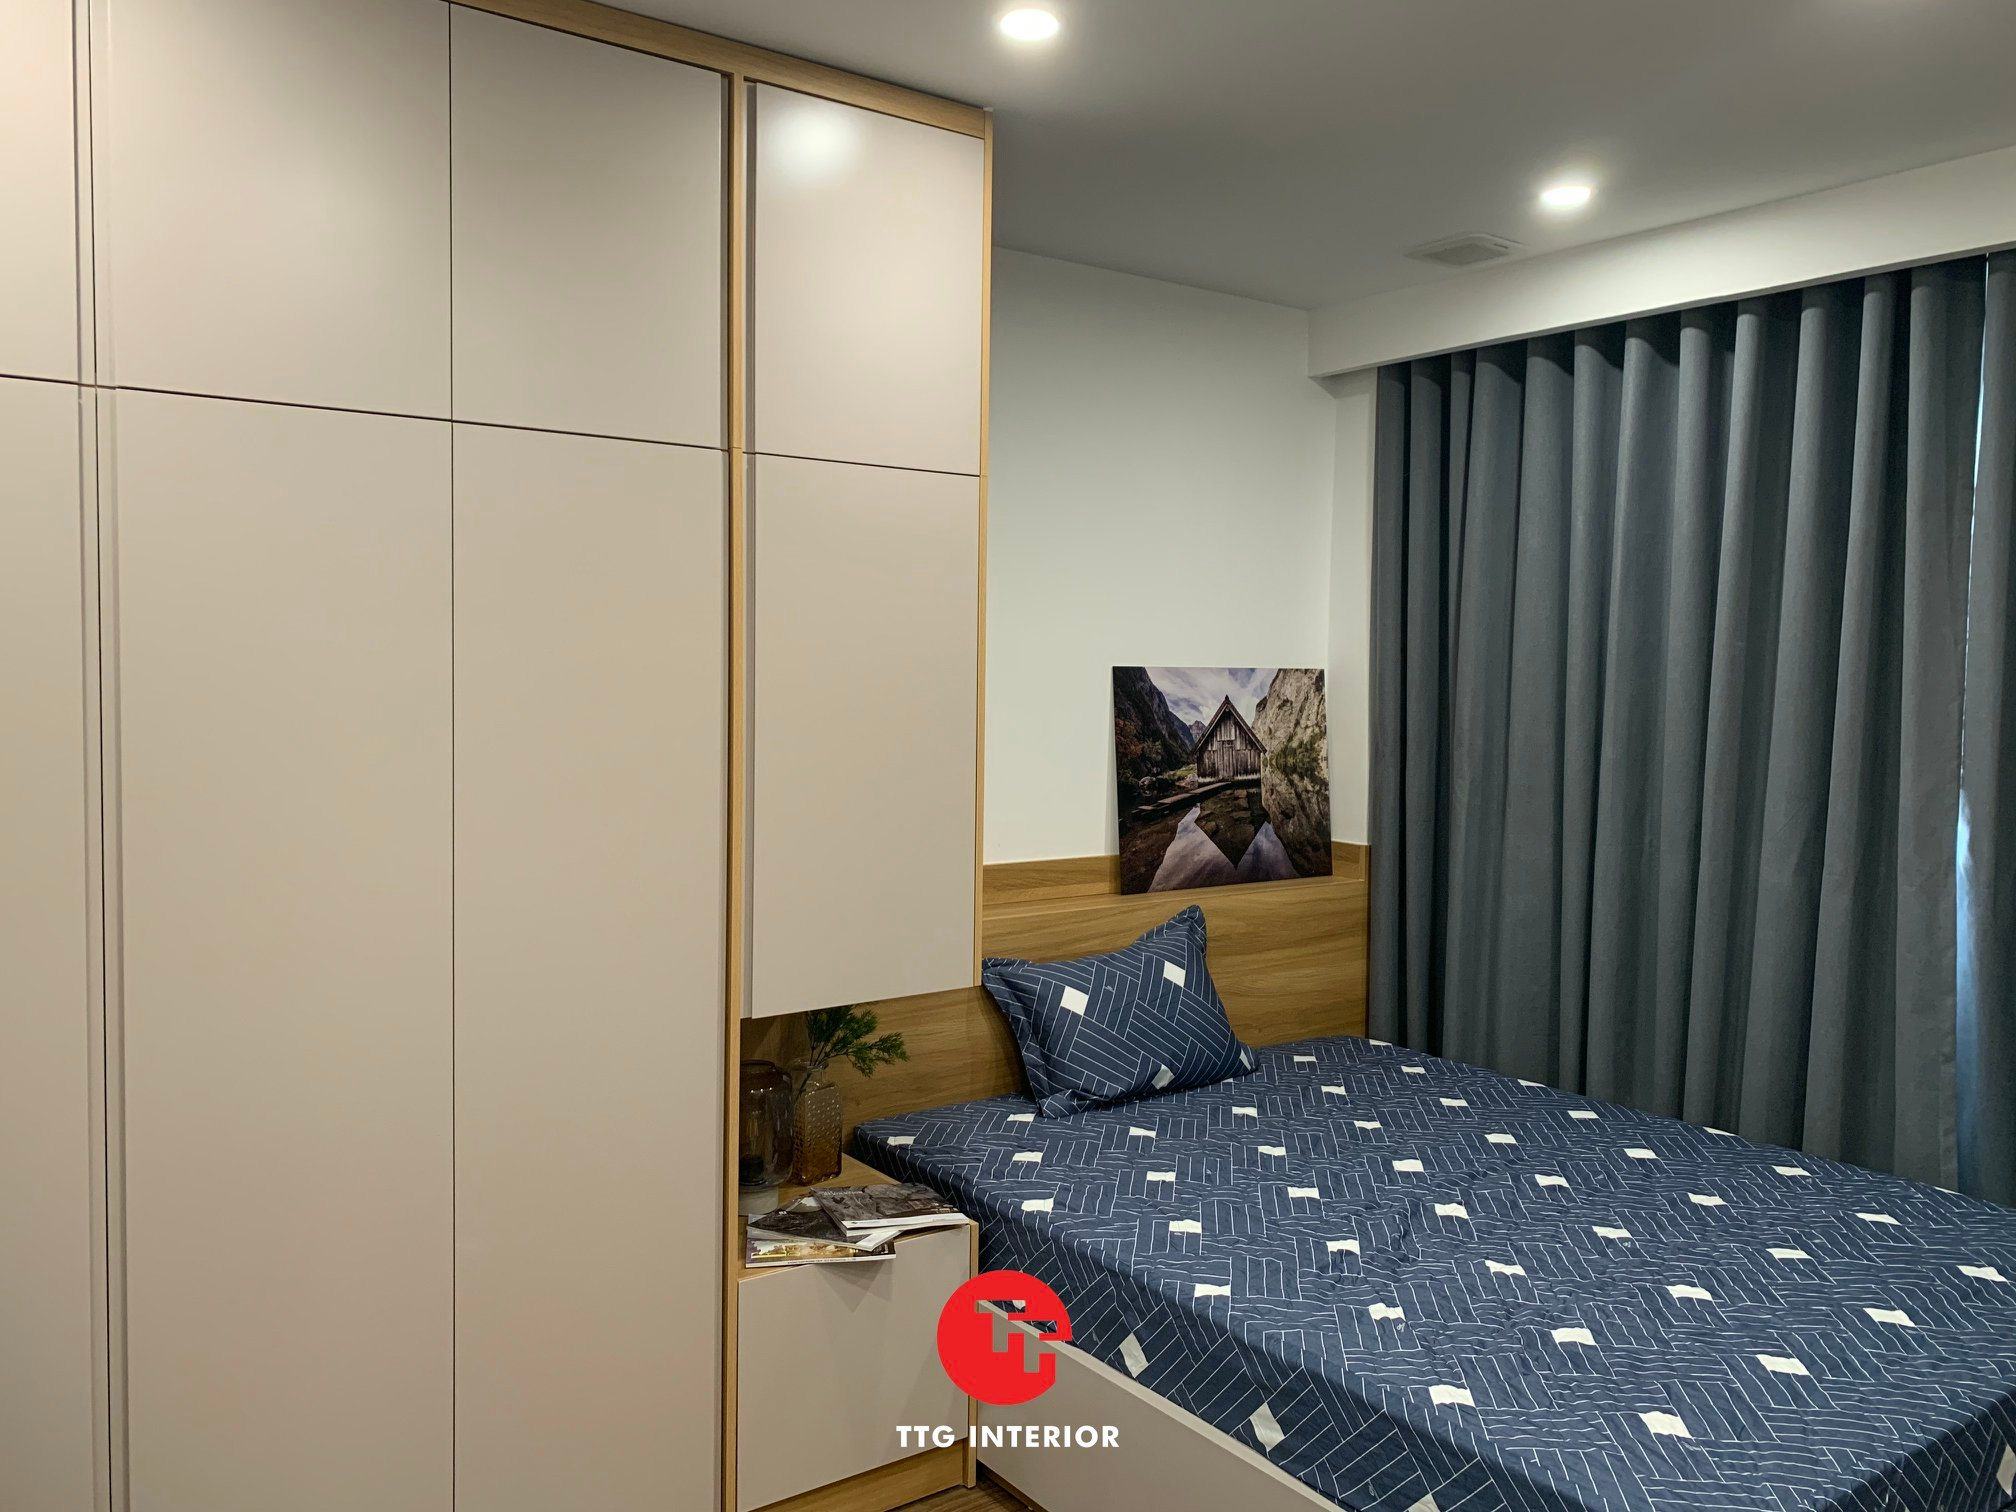 Hình ảnh thực tế dự án căn hộ Minato tại TTG Interior